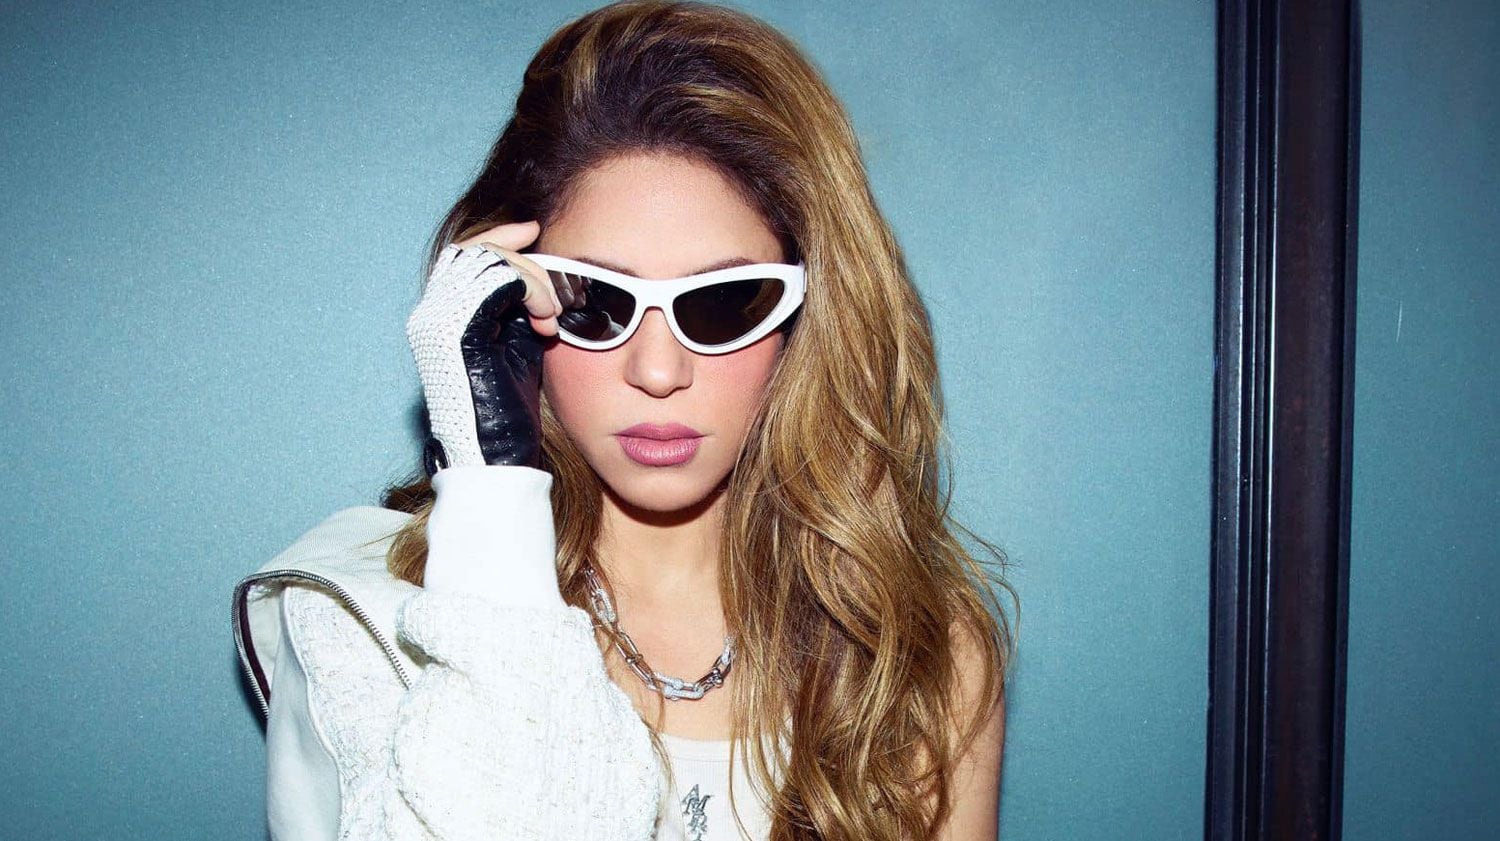 El duodécimo álbum de estudio, de Shakira "Las mujeres ya no lloran", lanzado el pasado 22 de marzo, fue inspirado en su separación del padre de sus hijos.